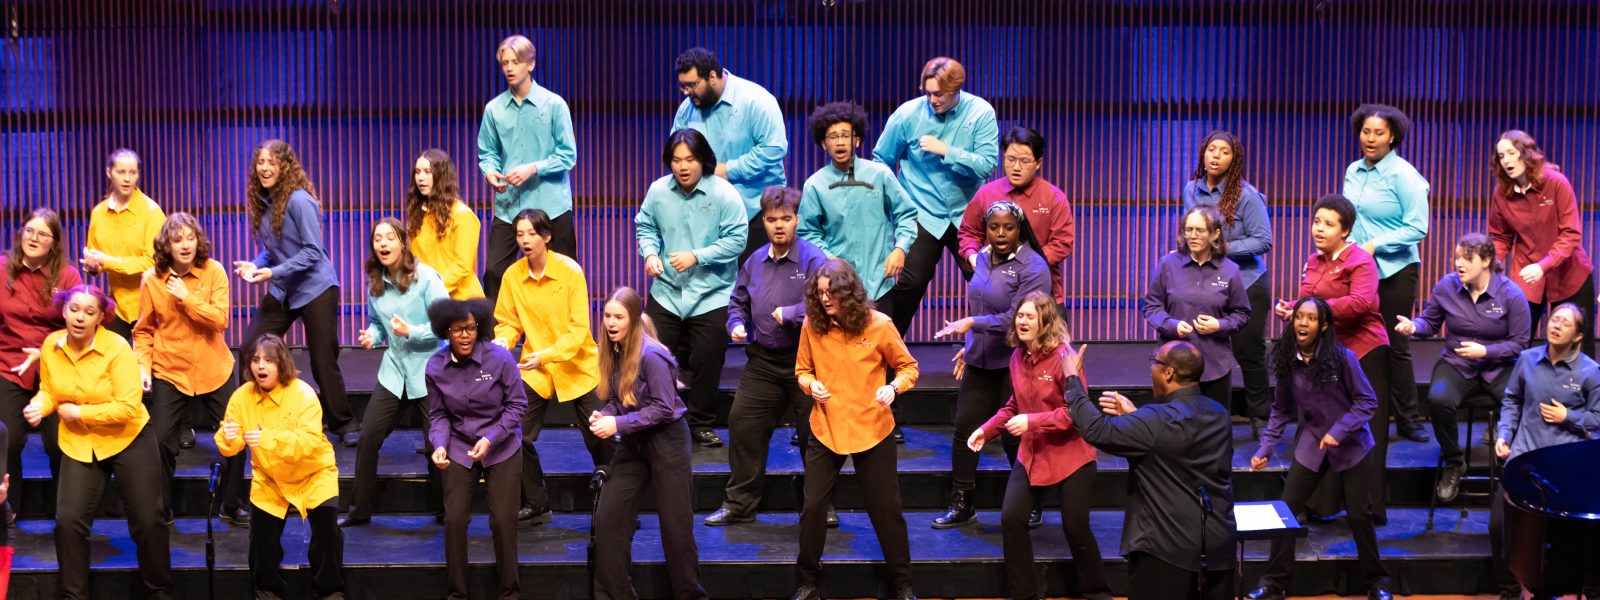 Miembros de VocalEssence Cantantes de esta época en el escenario vistiendo camisetas multicolores.